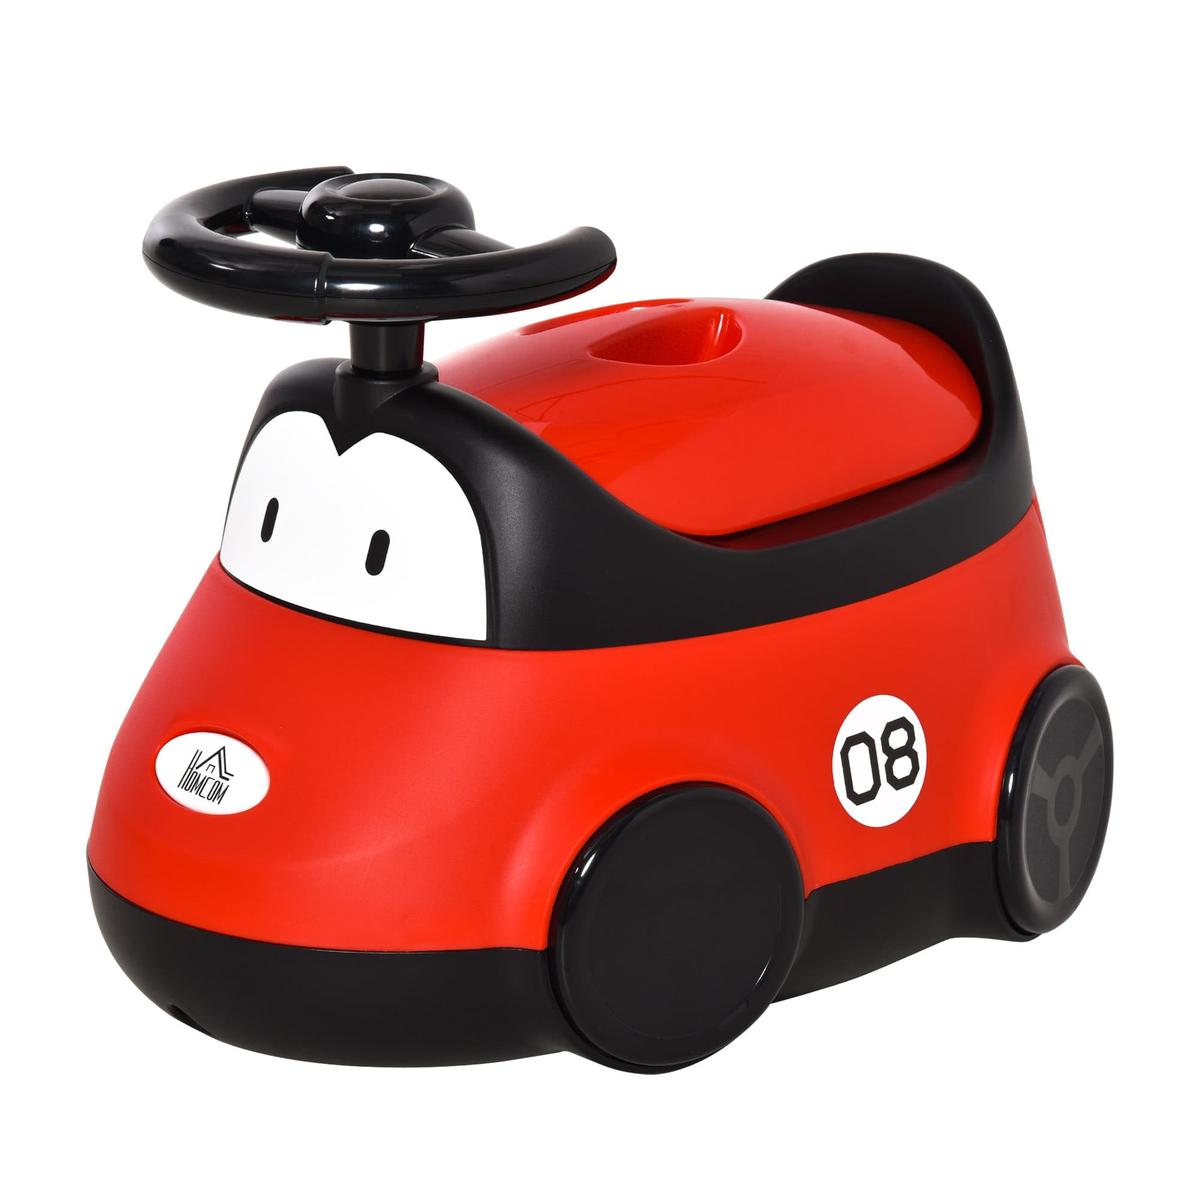 Homcom - Bacio de bebé em forma de carro | Bacios e adaptadores de wc |  Loja de brinquedos e videojogos Online Toysrus